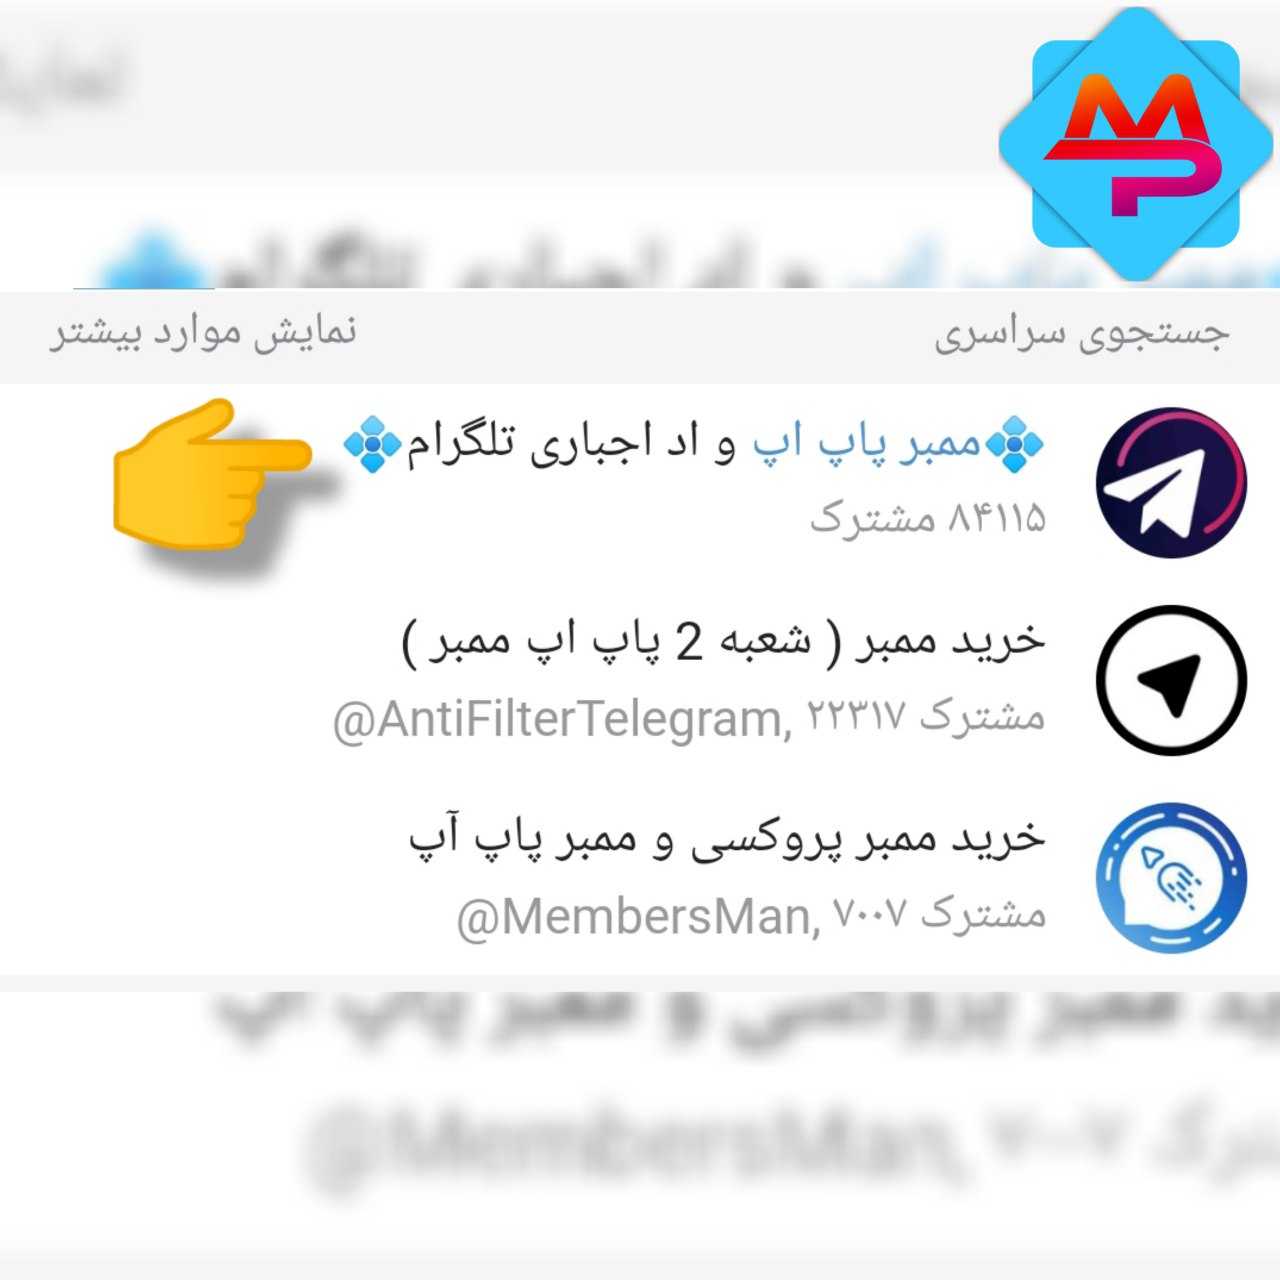 photo 2022 08 17 22 05 35 - جدید ترین روش های جذب ممبر تلگرام که نمی خواهند شما بدانید !